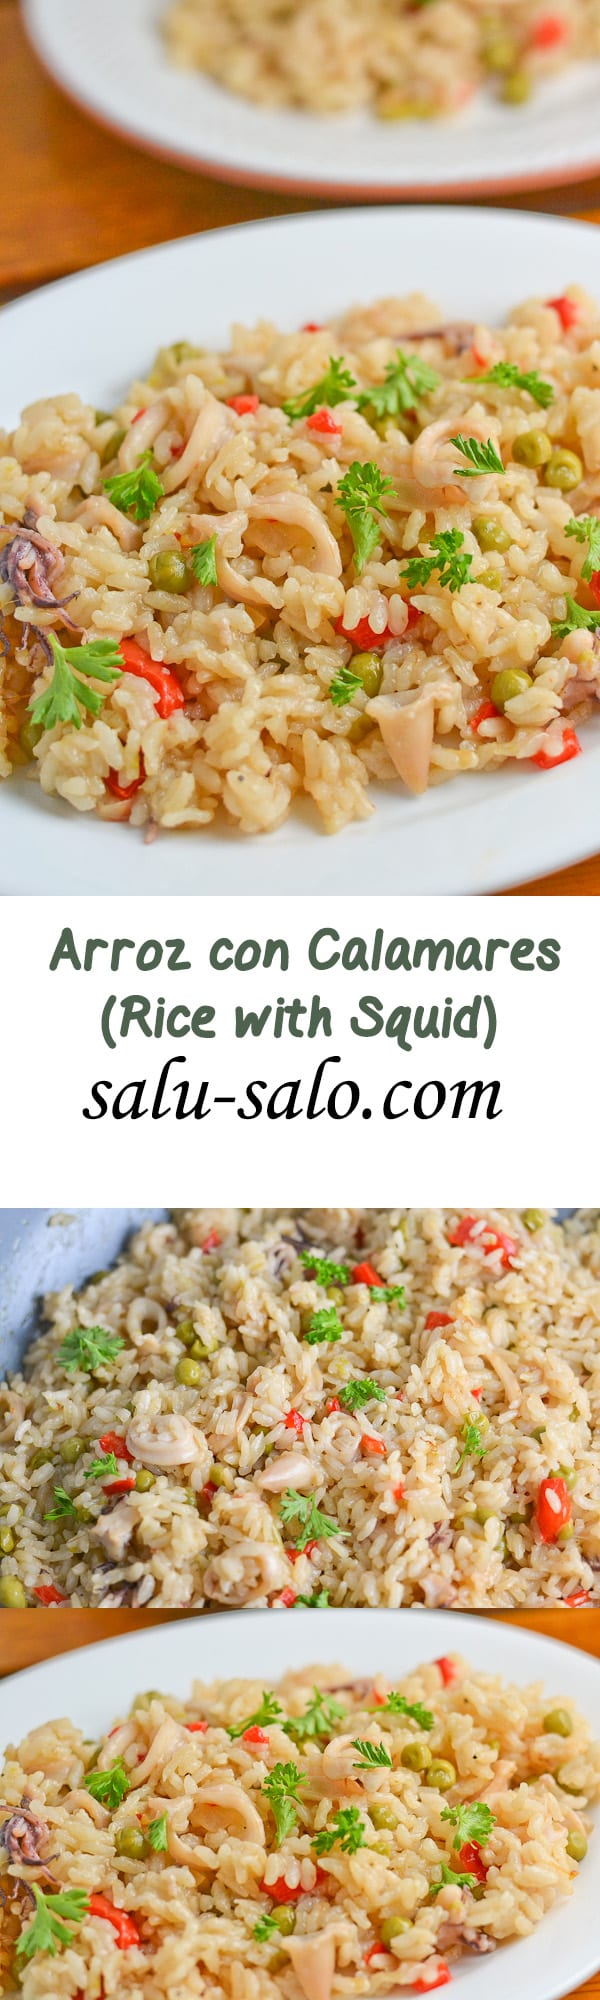 Arroz con Calamares - Rice with Squid